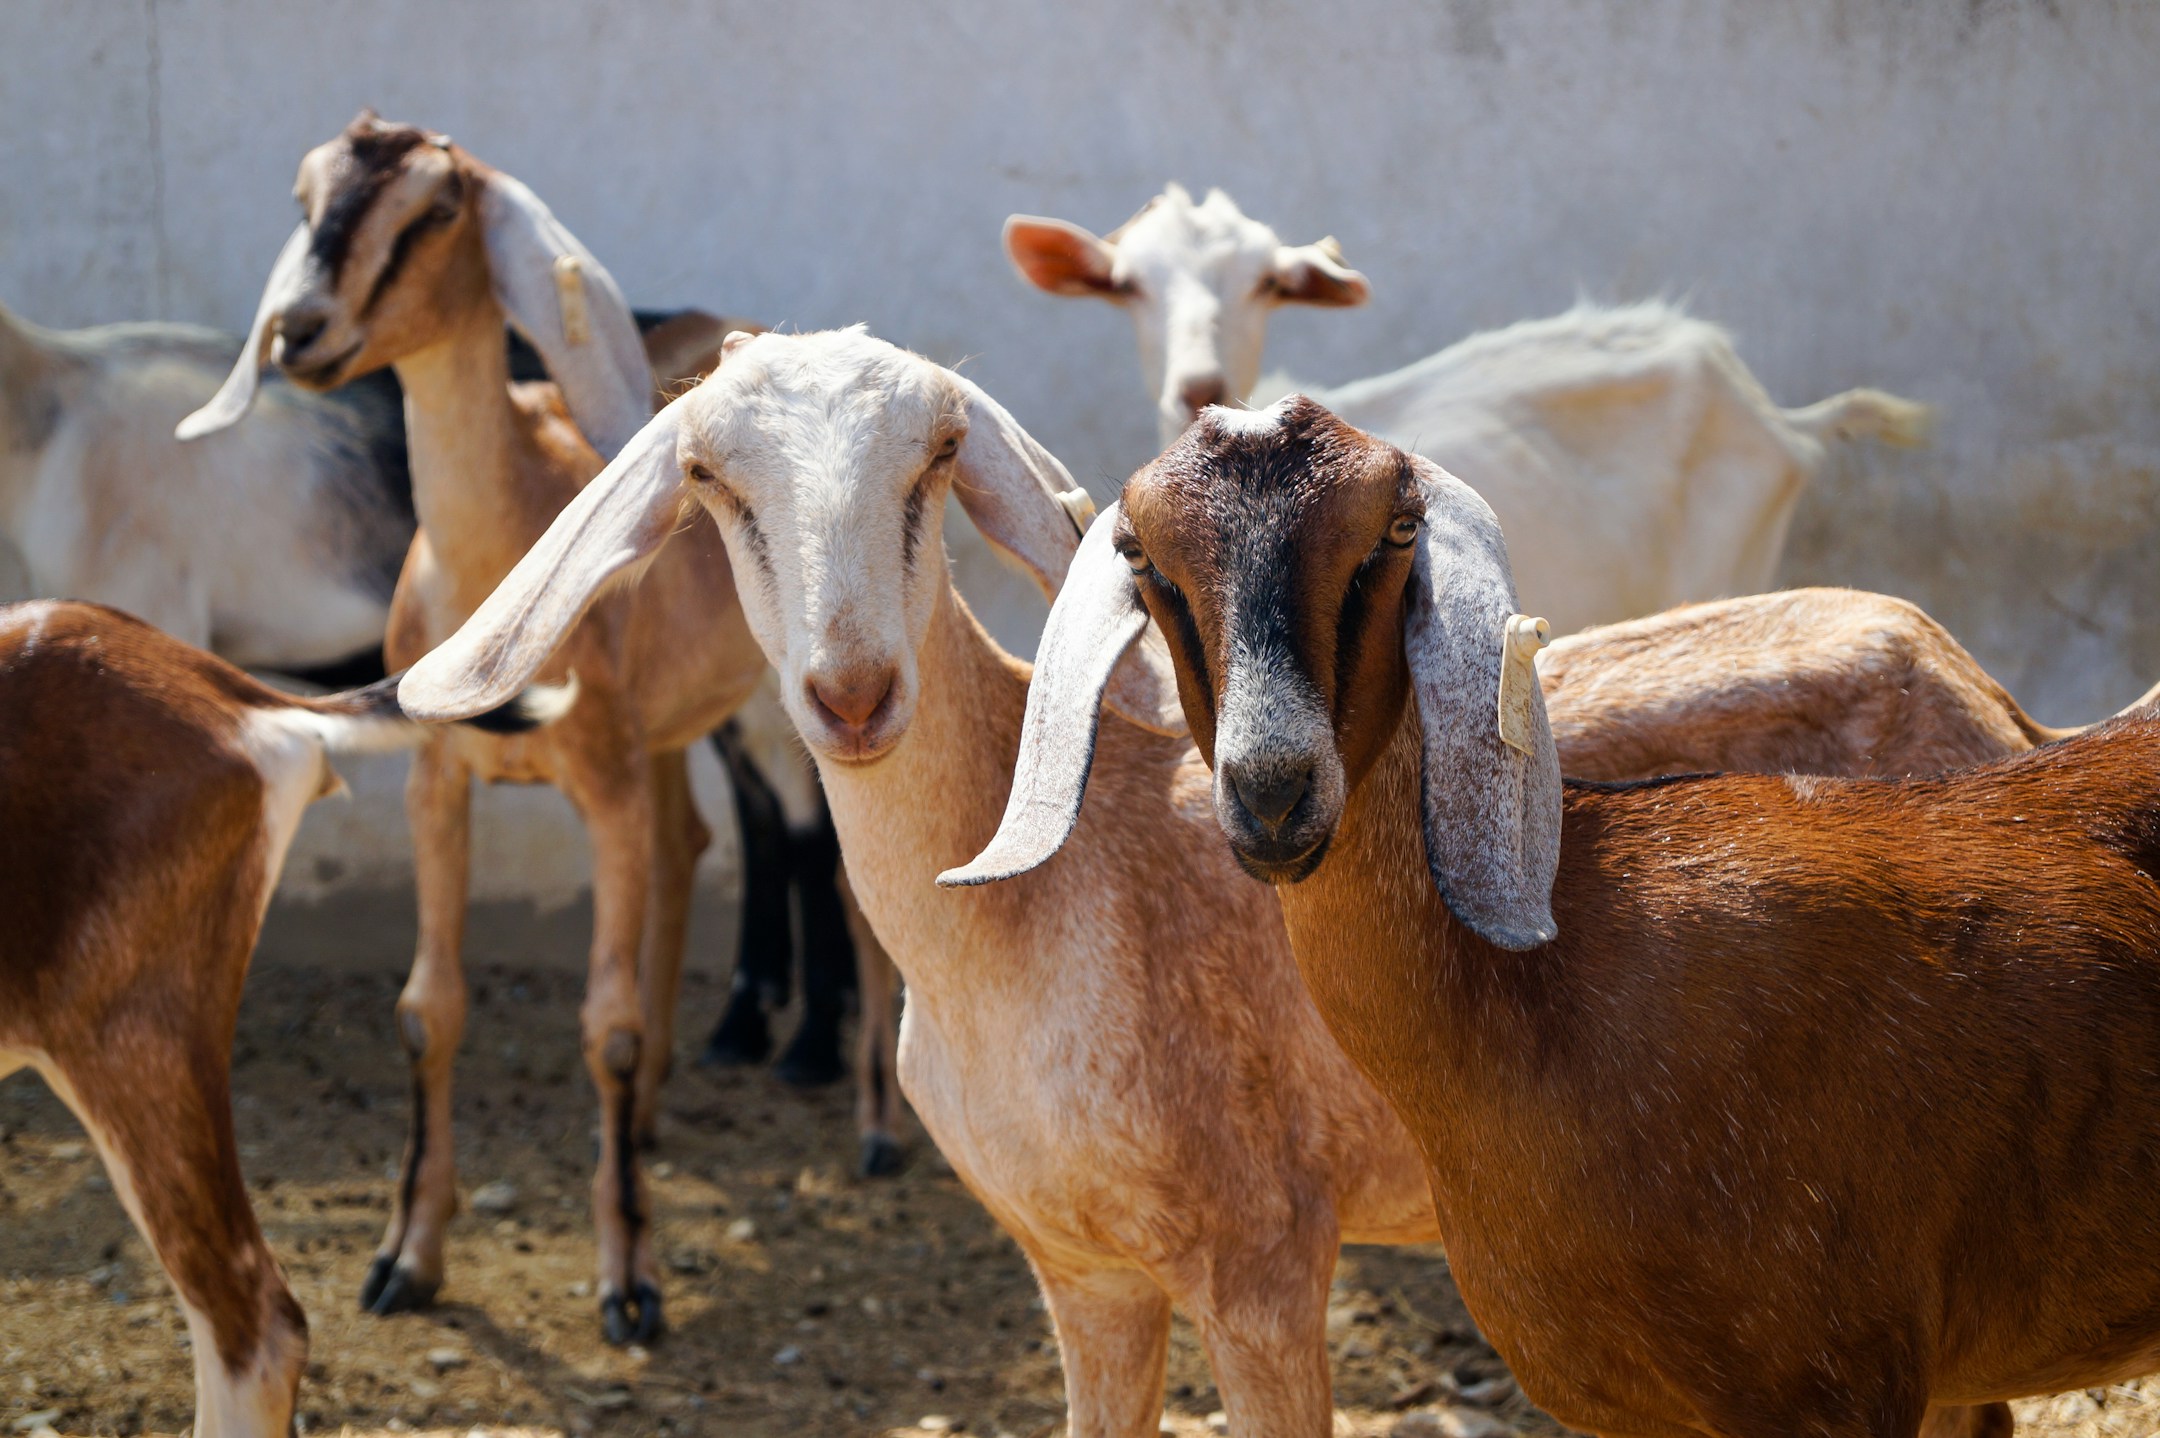 ये हैं भारतीय बकरियों की टॉप नस्लें,जिनके पालन से आप कर सकते हैं बंपर कमाई